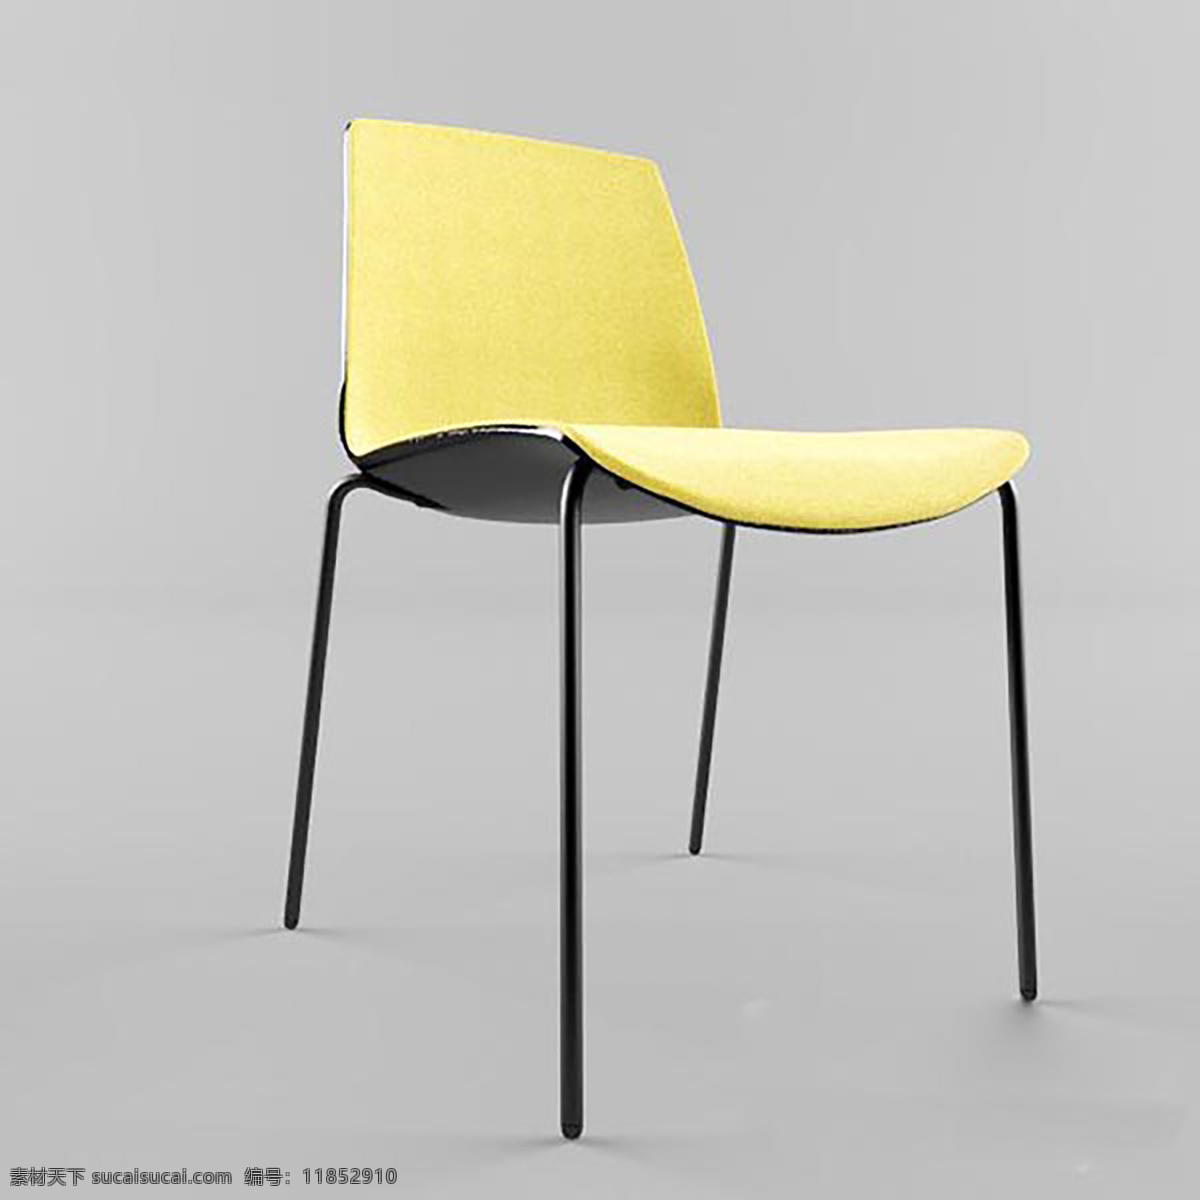 黄色 休闲椅 单体 3d 模型 椅子 家具 简约 餐桌 现代 室内空间